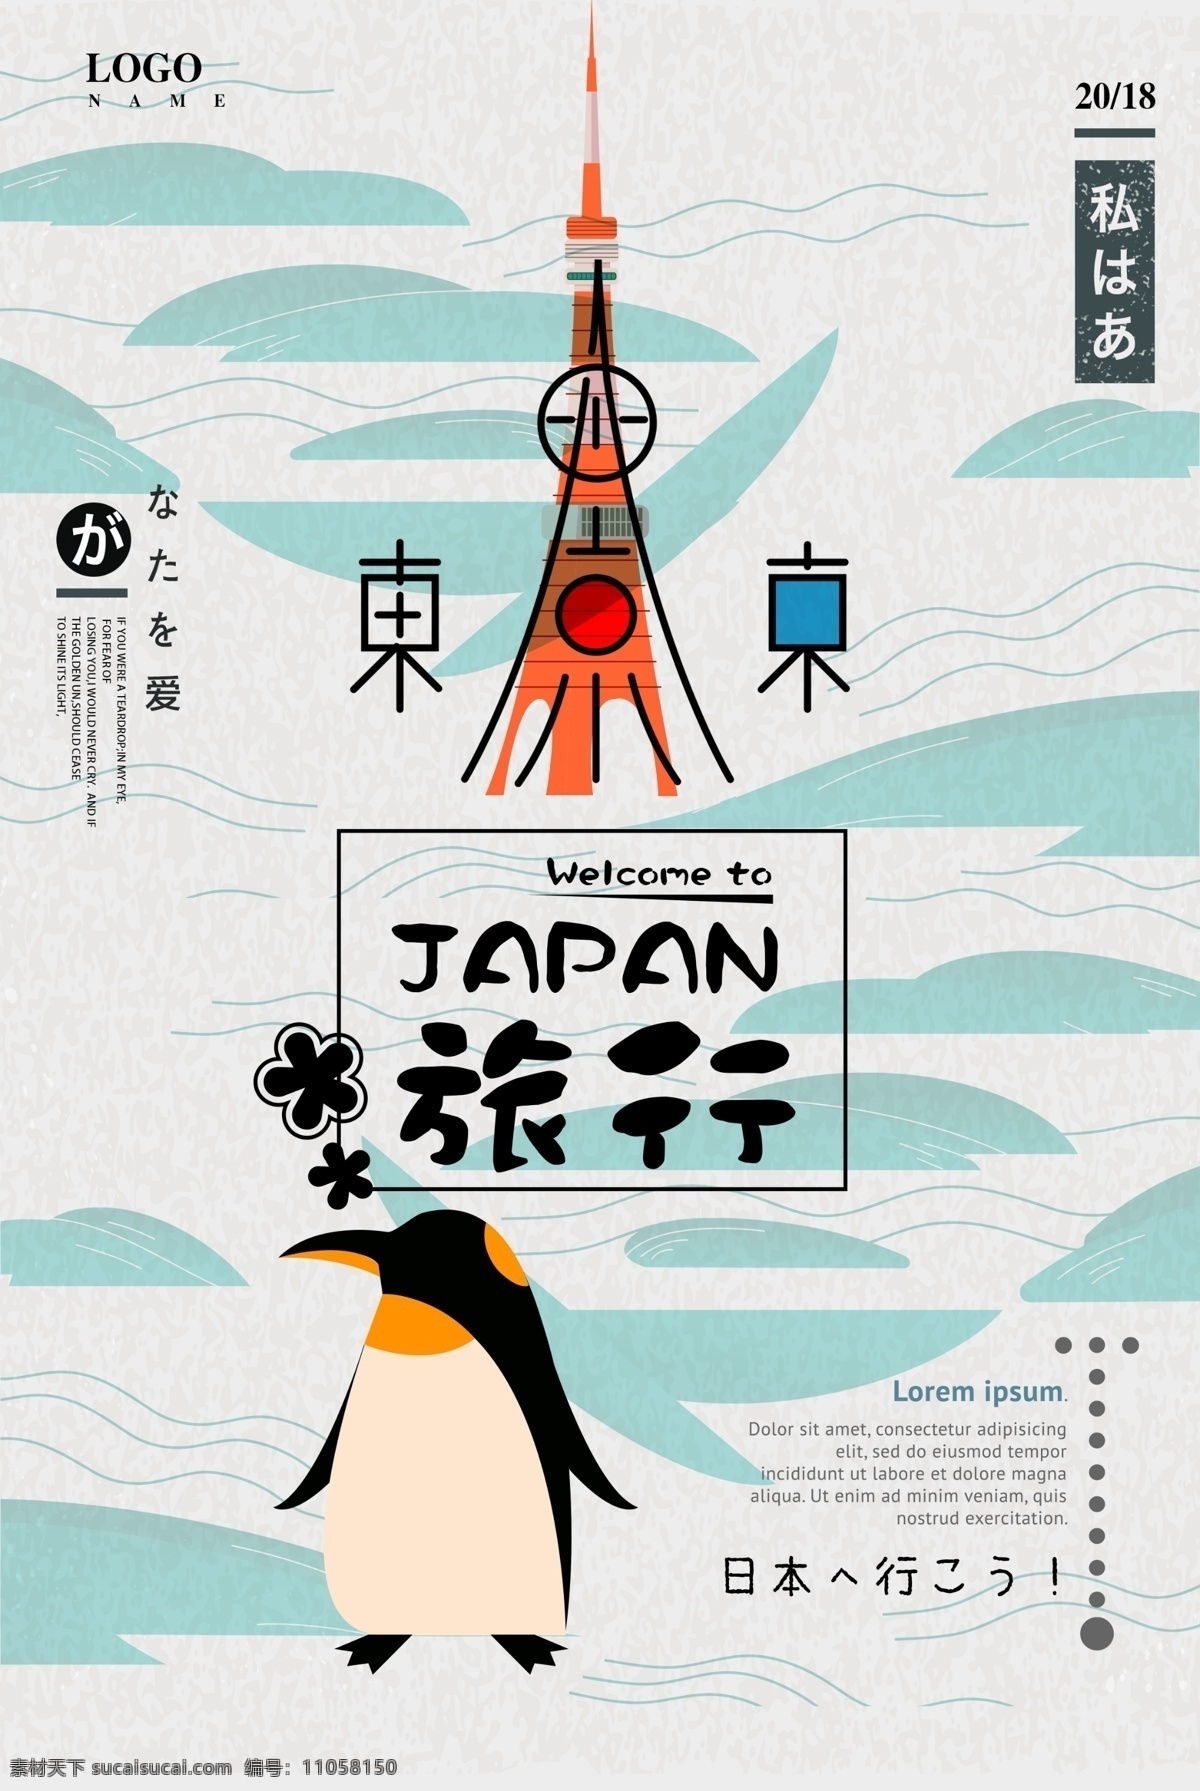 日本 东京 印象 旅游 海报 大阪 日本印象 日本旅游 日本旅游海报 日本旅游风光 日本旅游攻略 日本旅游文化 日本建筑 日本美食 日本画册 日本广告